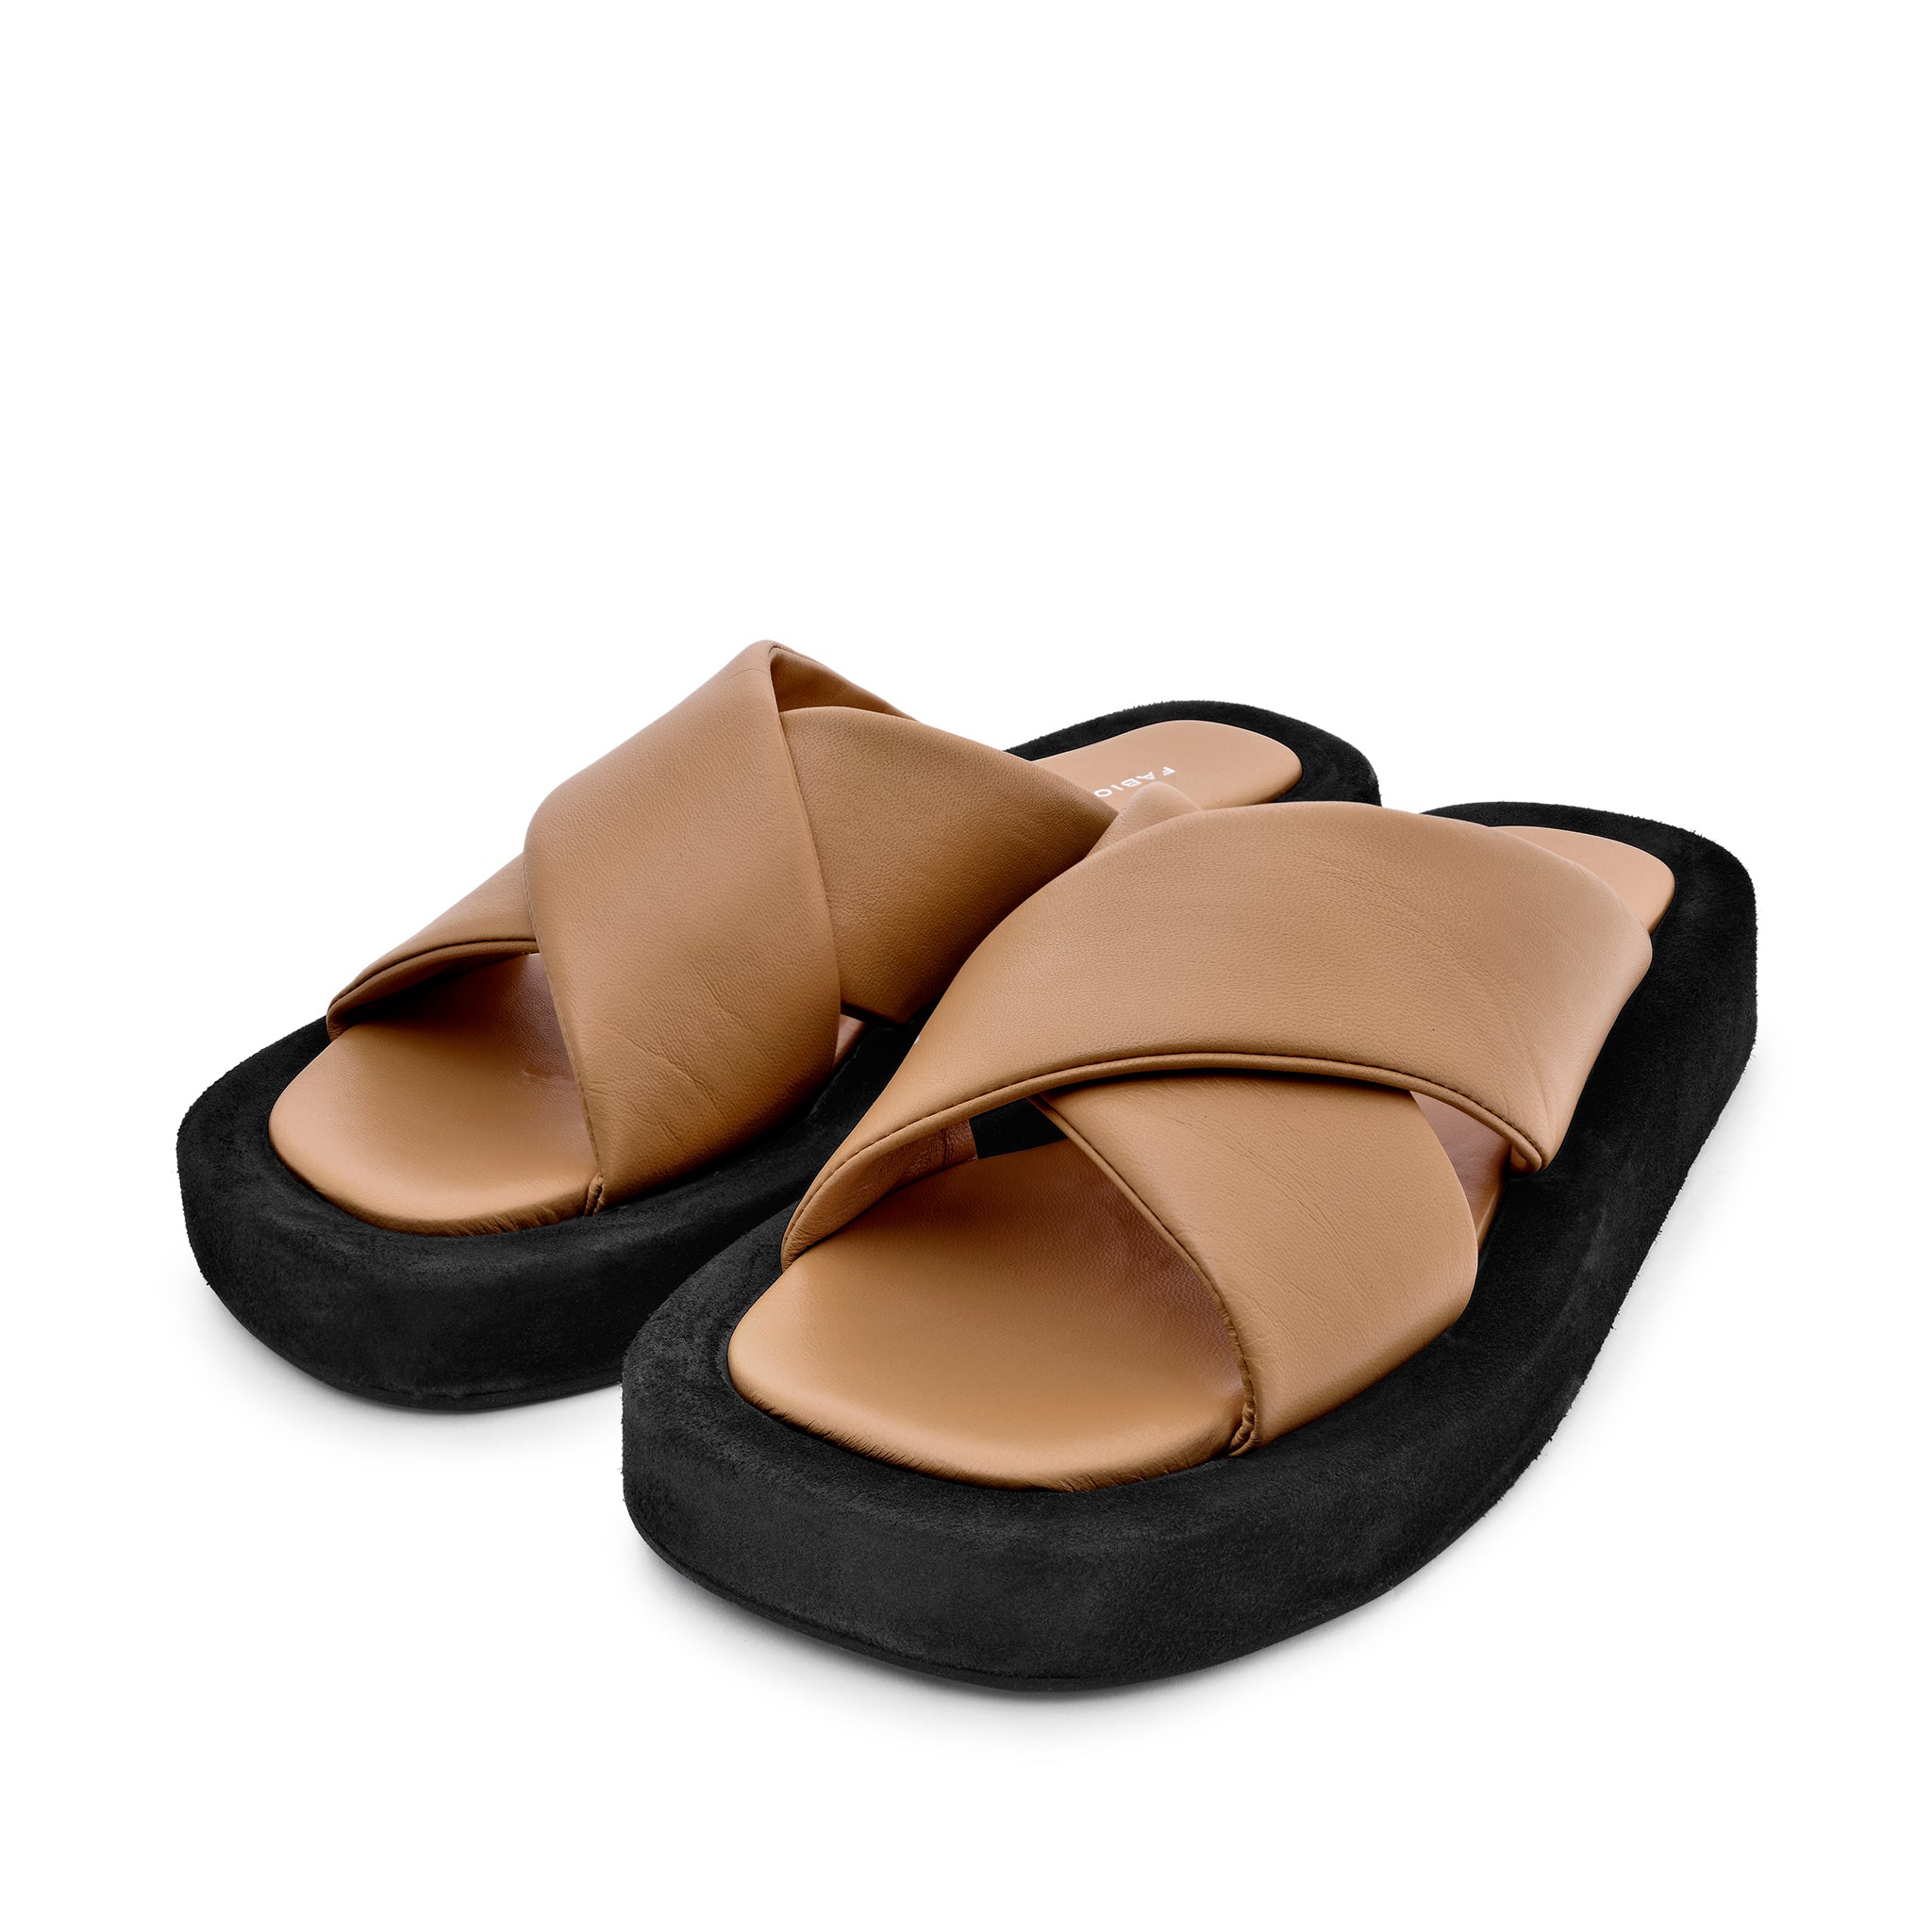 Luna Beige Leather Flat Sandals LUNA5004 - 5